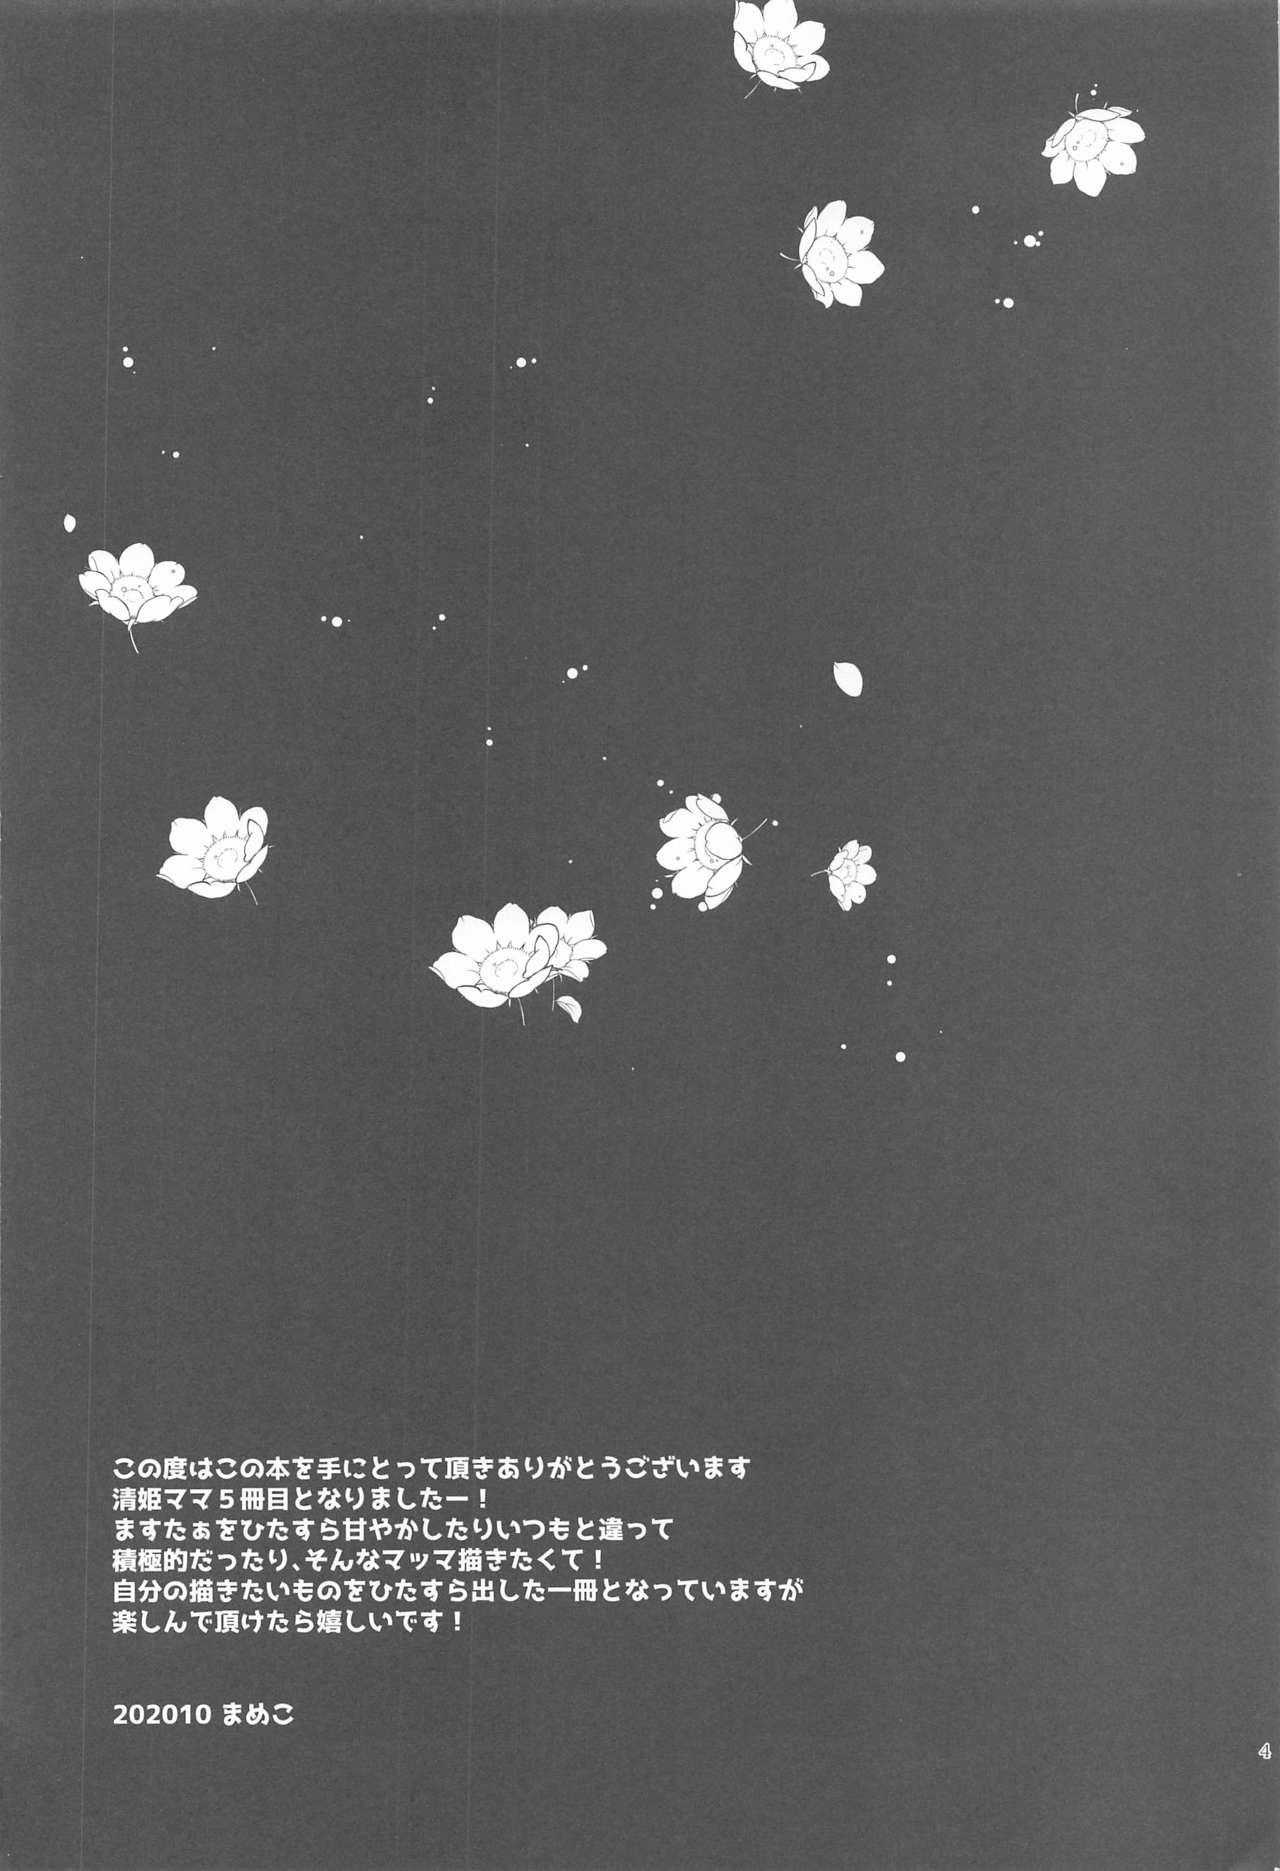 Novia Uchi no Kiyohime wa Mama 5 - Fate grand order Cuzinho - Page 3